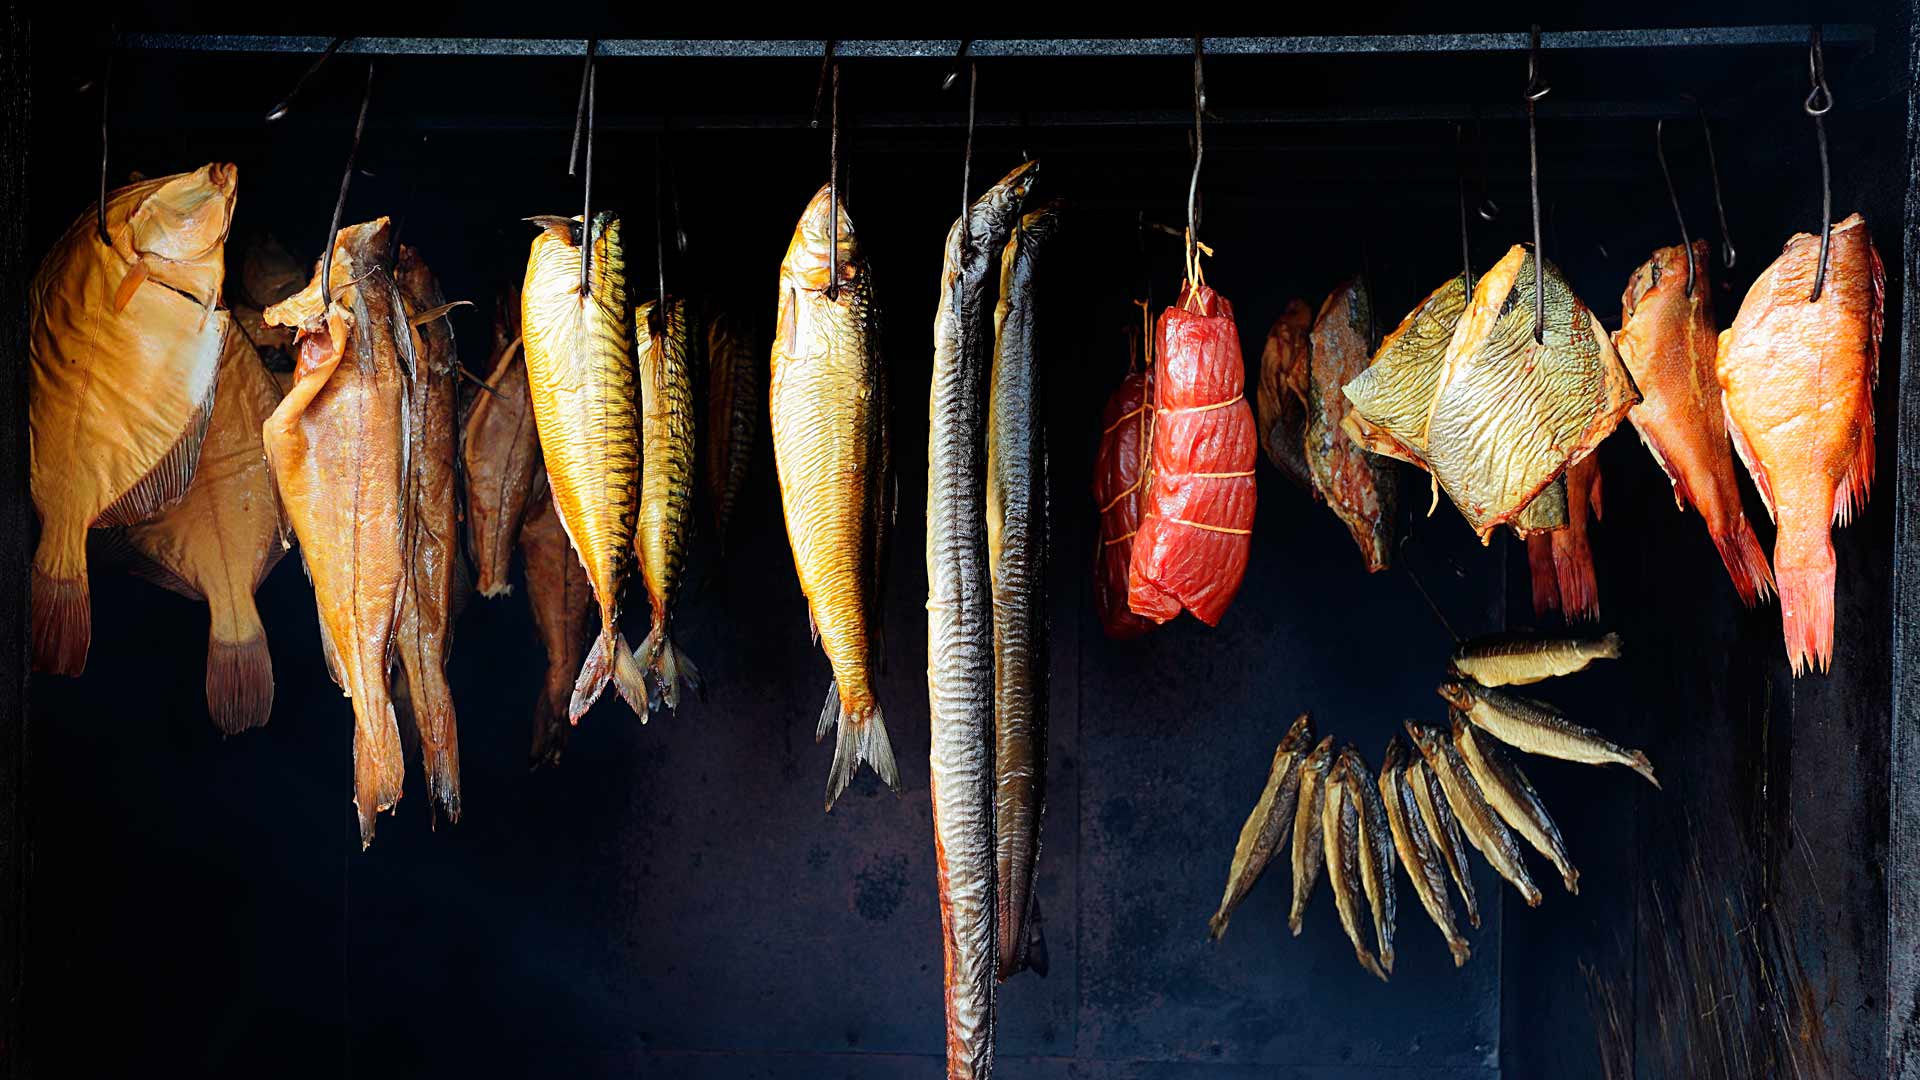 Как вялить рыбу в домашних условиях? рецепт вяления речной рыбы